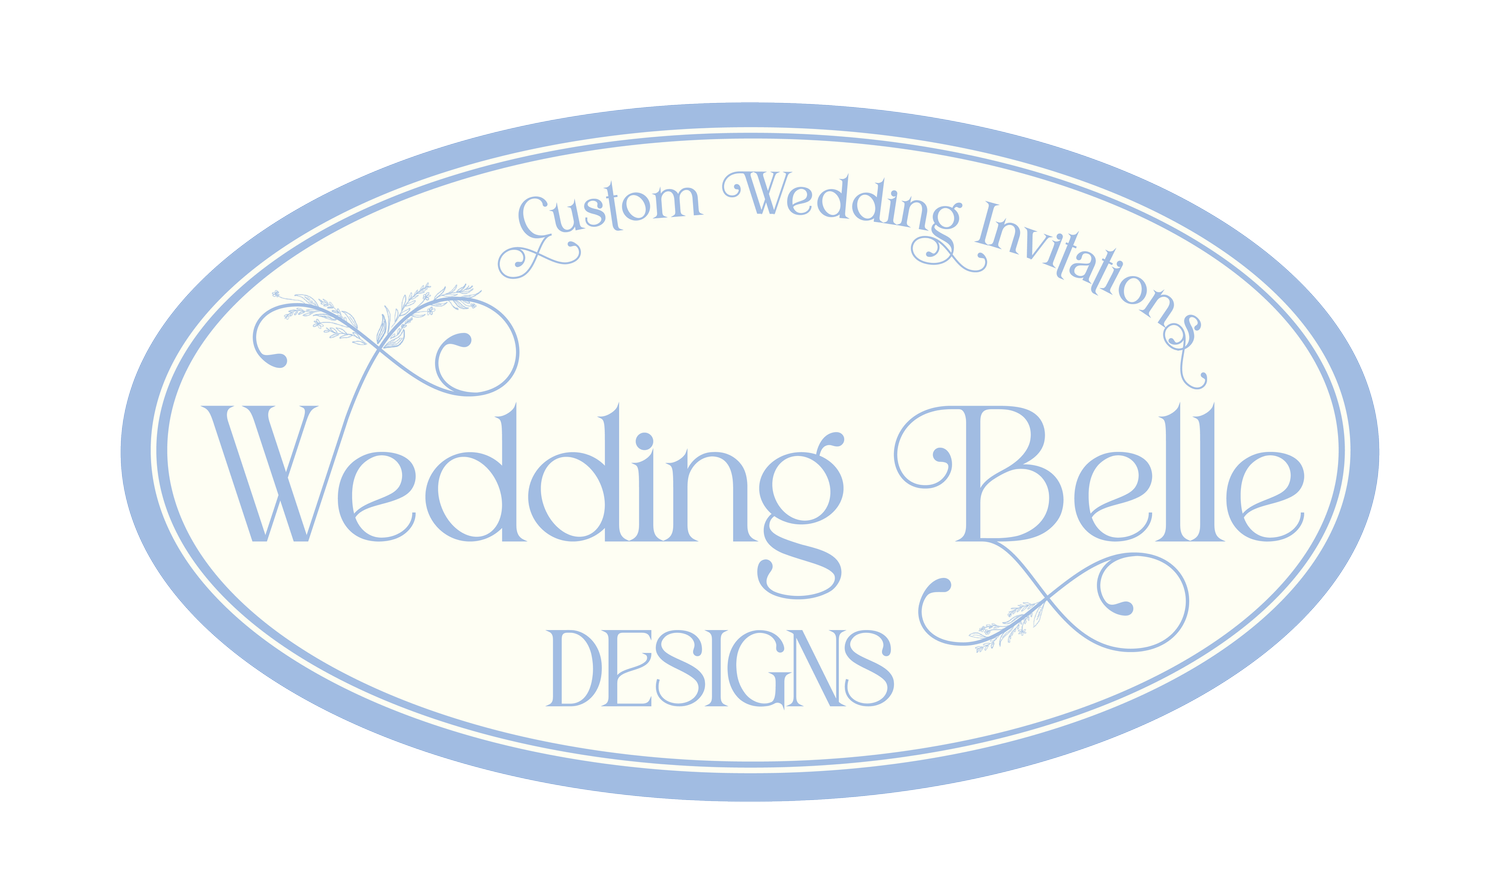 Wedding Belle Designs